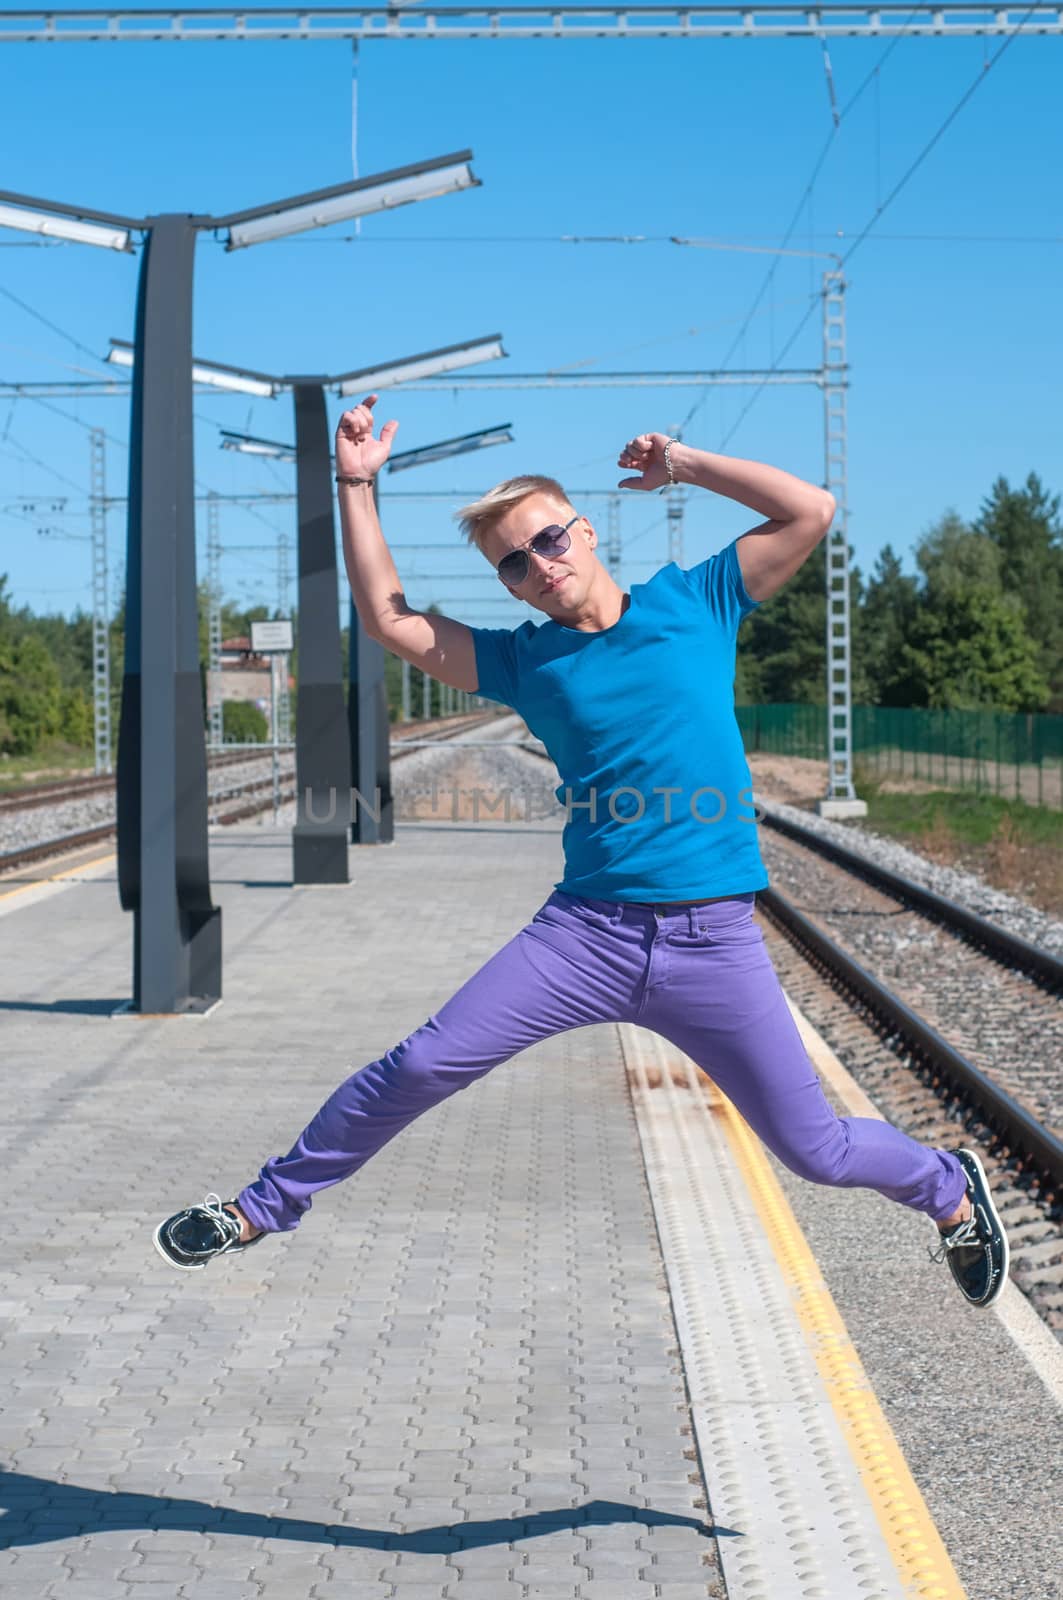 Shot of one man jumping on platform